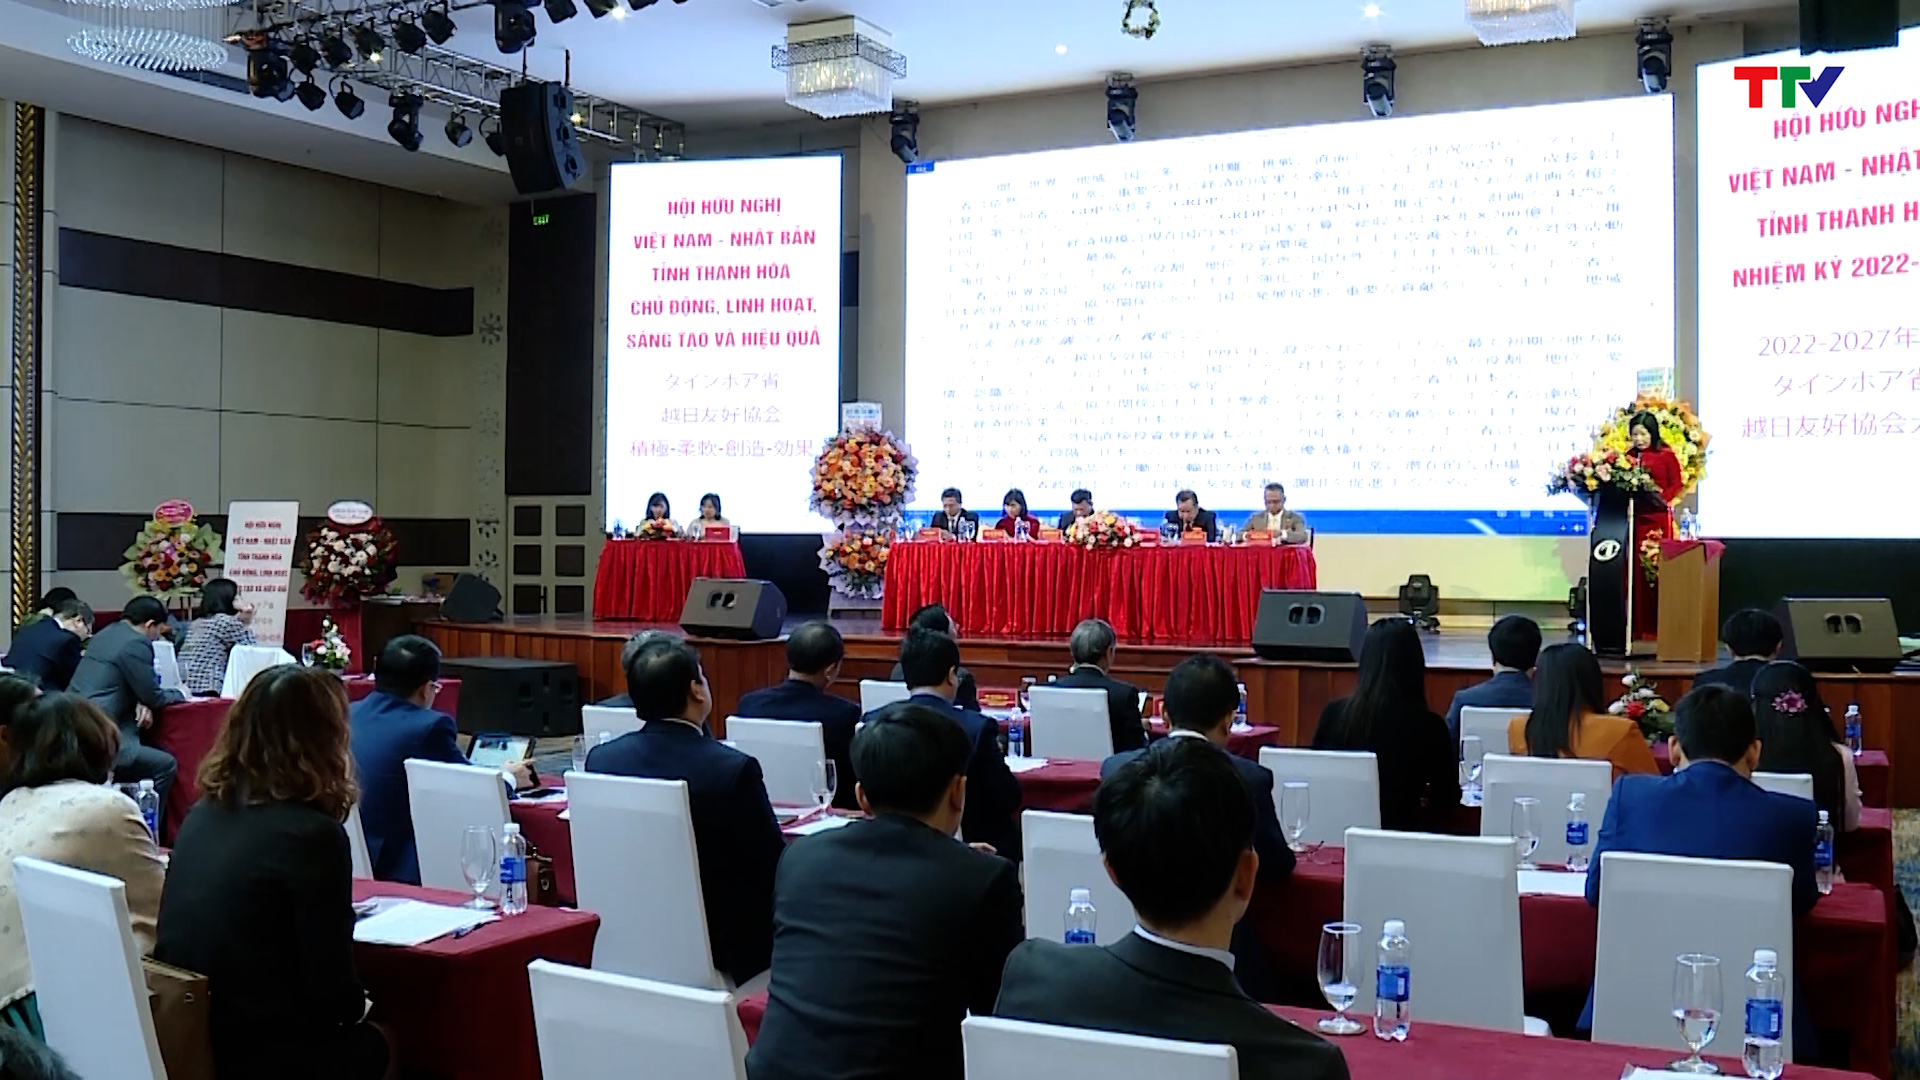 Đại hội Hội hữu nghị Việt Nam-Nhật Bản tỉnh Thanh Hóa nhiệm kỳ 2022-2027  - Ảnh 8.